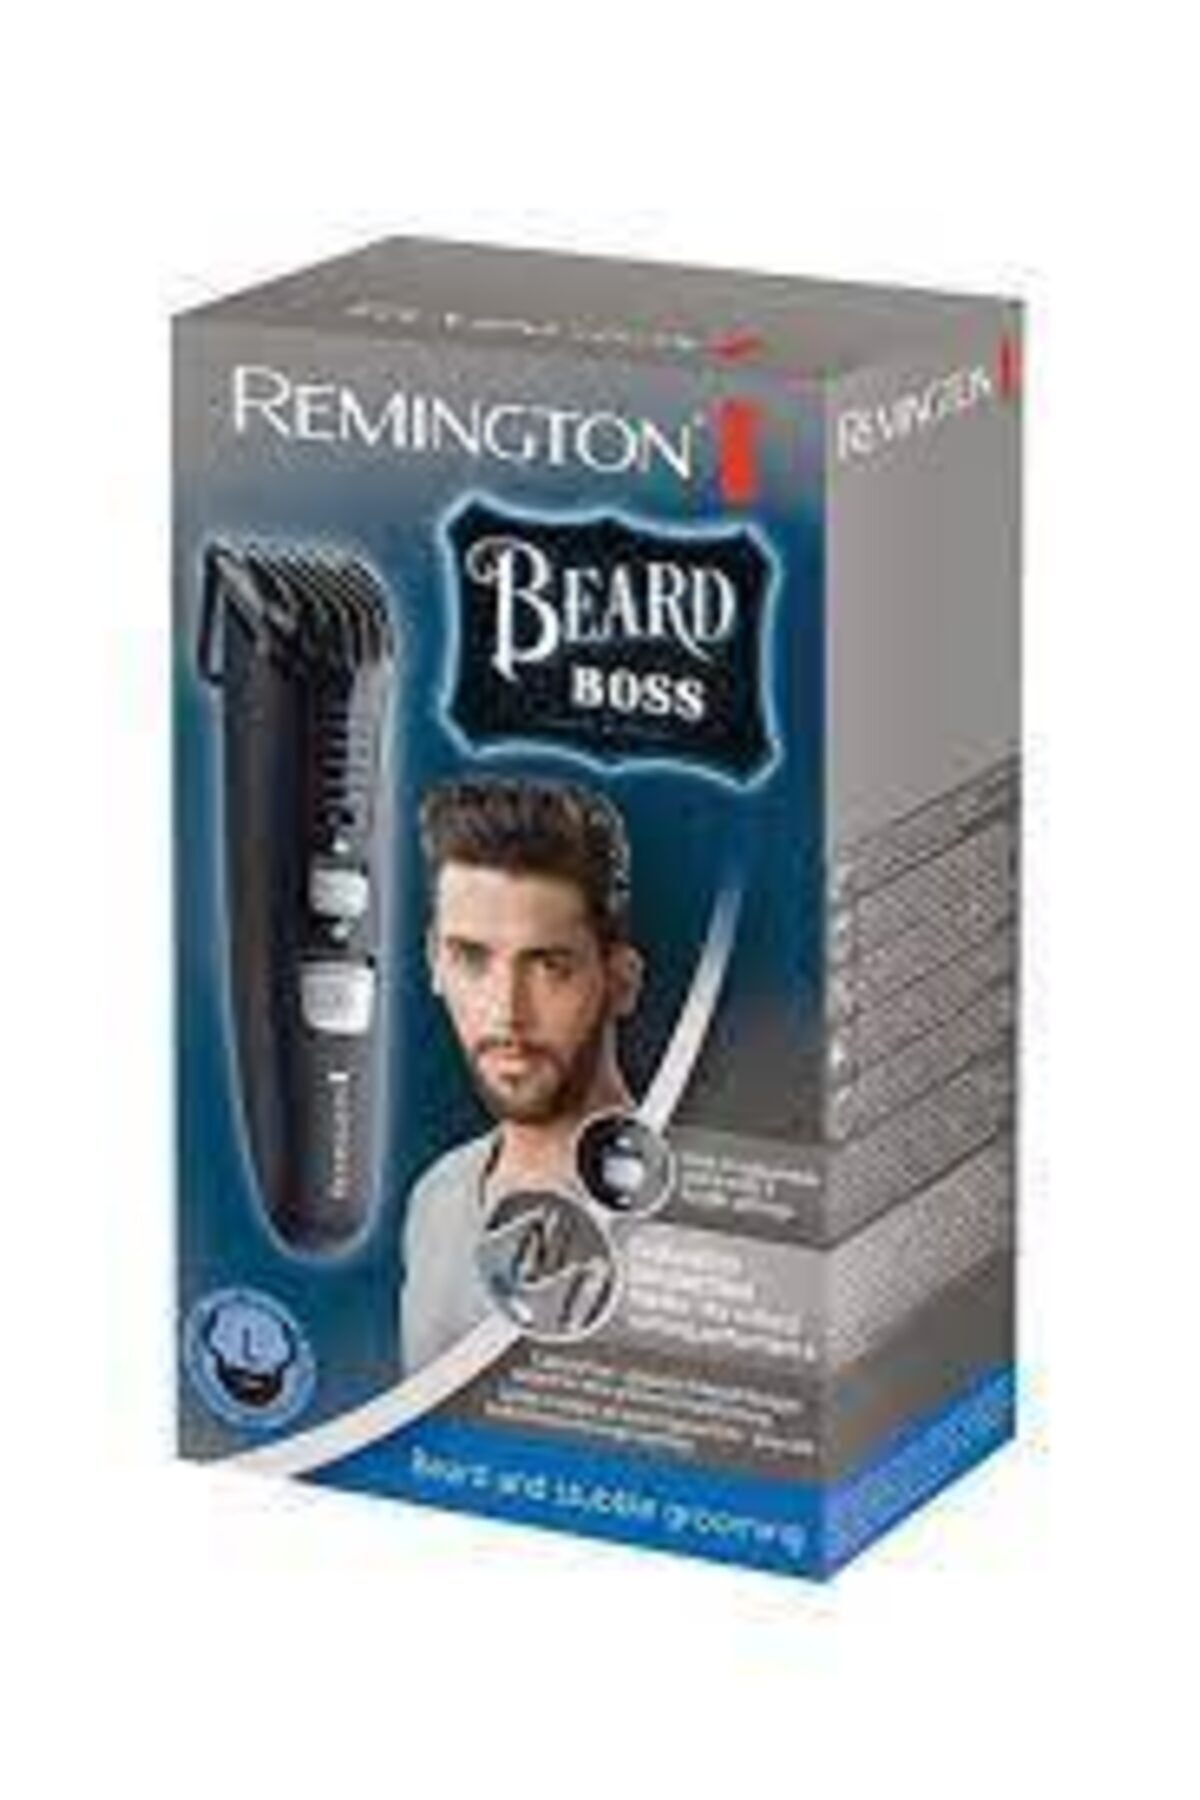 Remington Beard Boss Tıraş Makinesi Mb4120 E51 4008496870257 FV8322